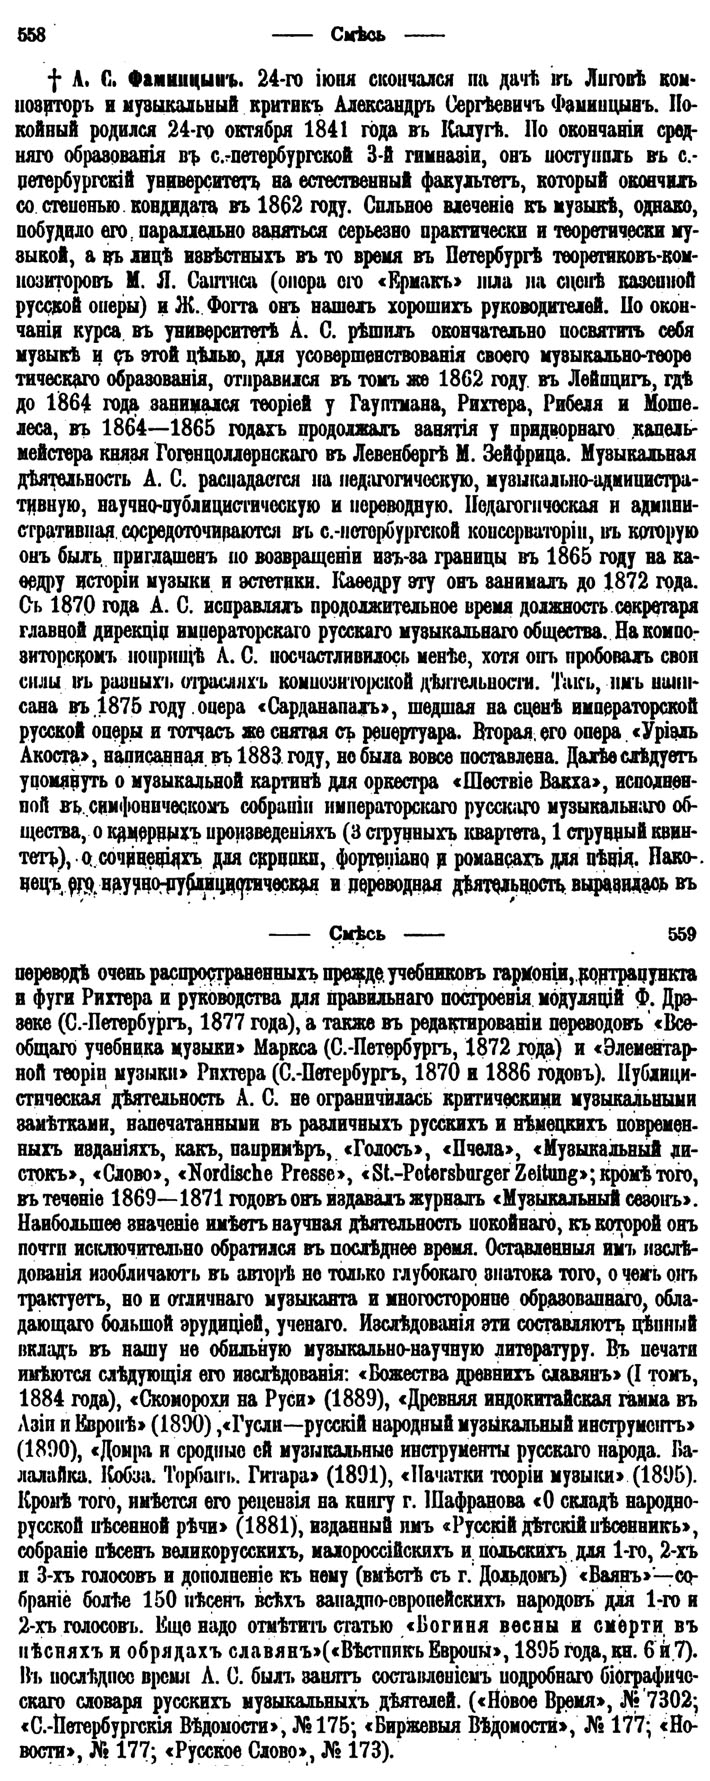 Некролог о А. С. Фаминцыне (Исторический вестник, 1896)